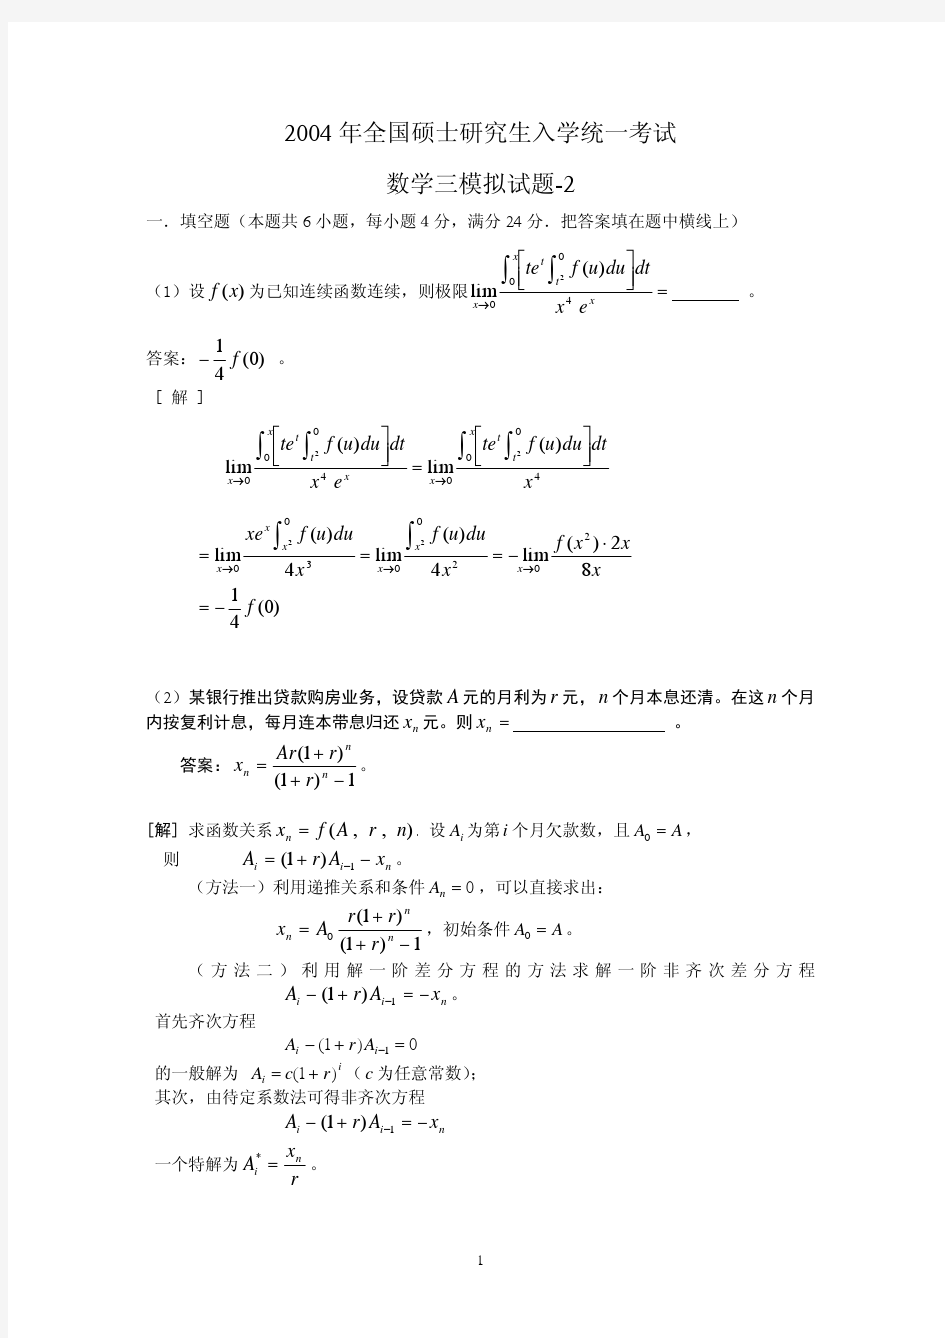 清华大学考研辅导班数学试题(十1)---